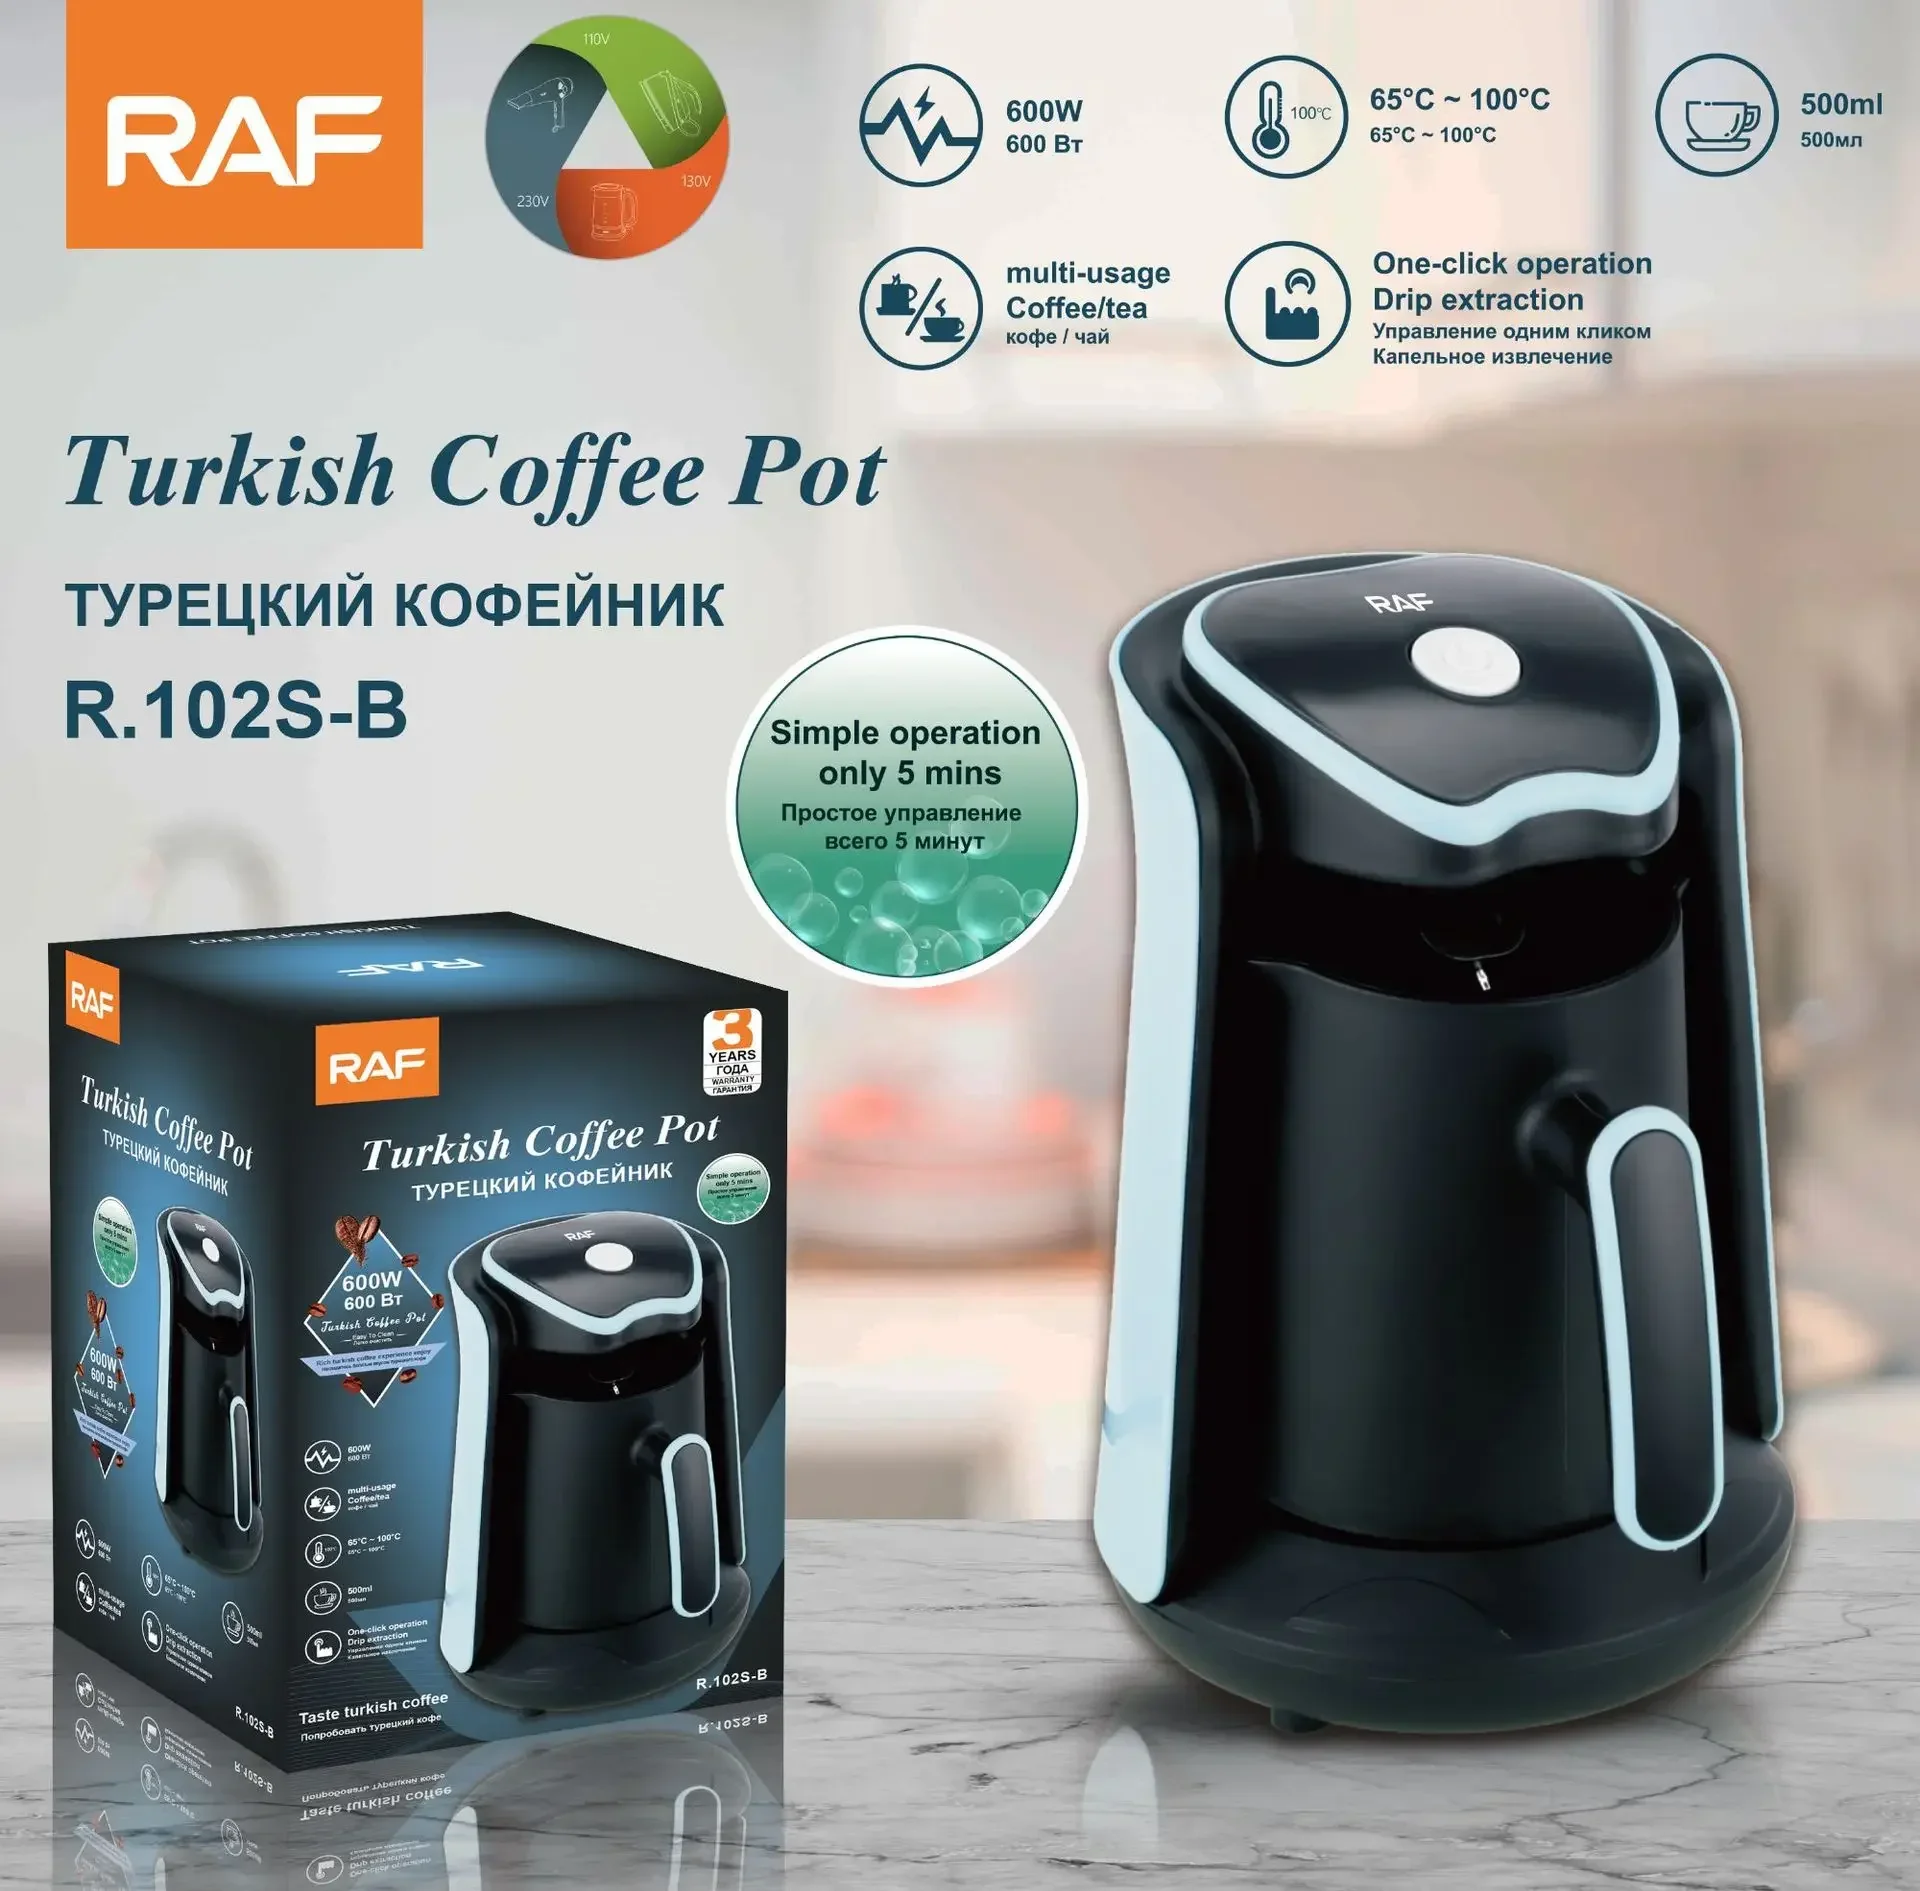 Török Kávé Gép, 5 Csésze, Teljesen Automata kávéfőző, török Kávé, Tej, Forró Csokoládé